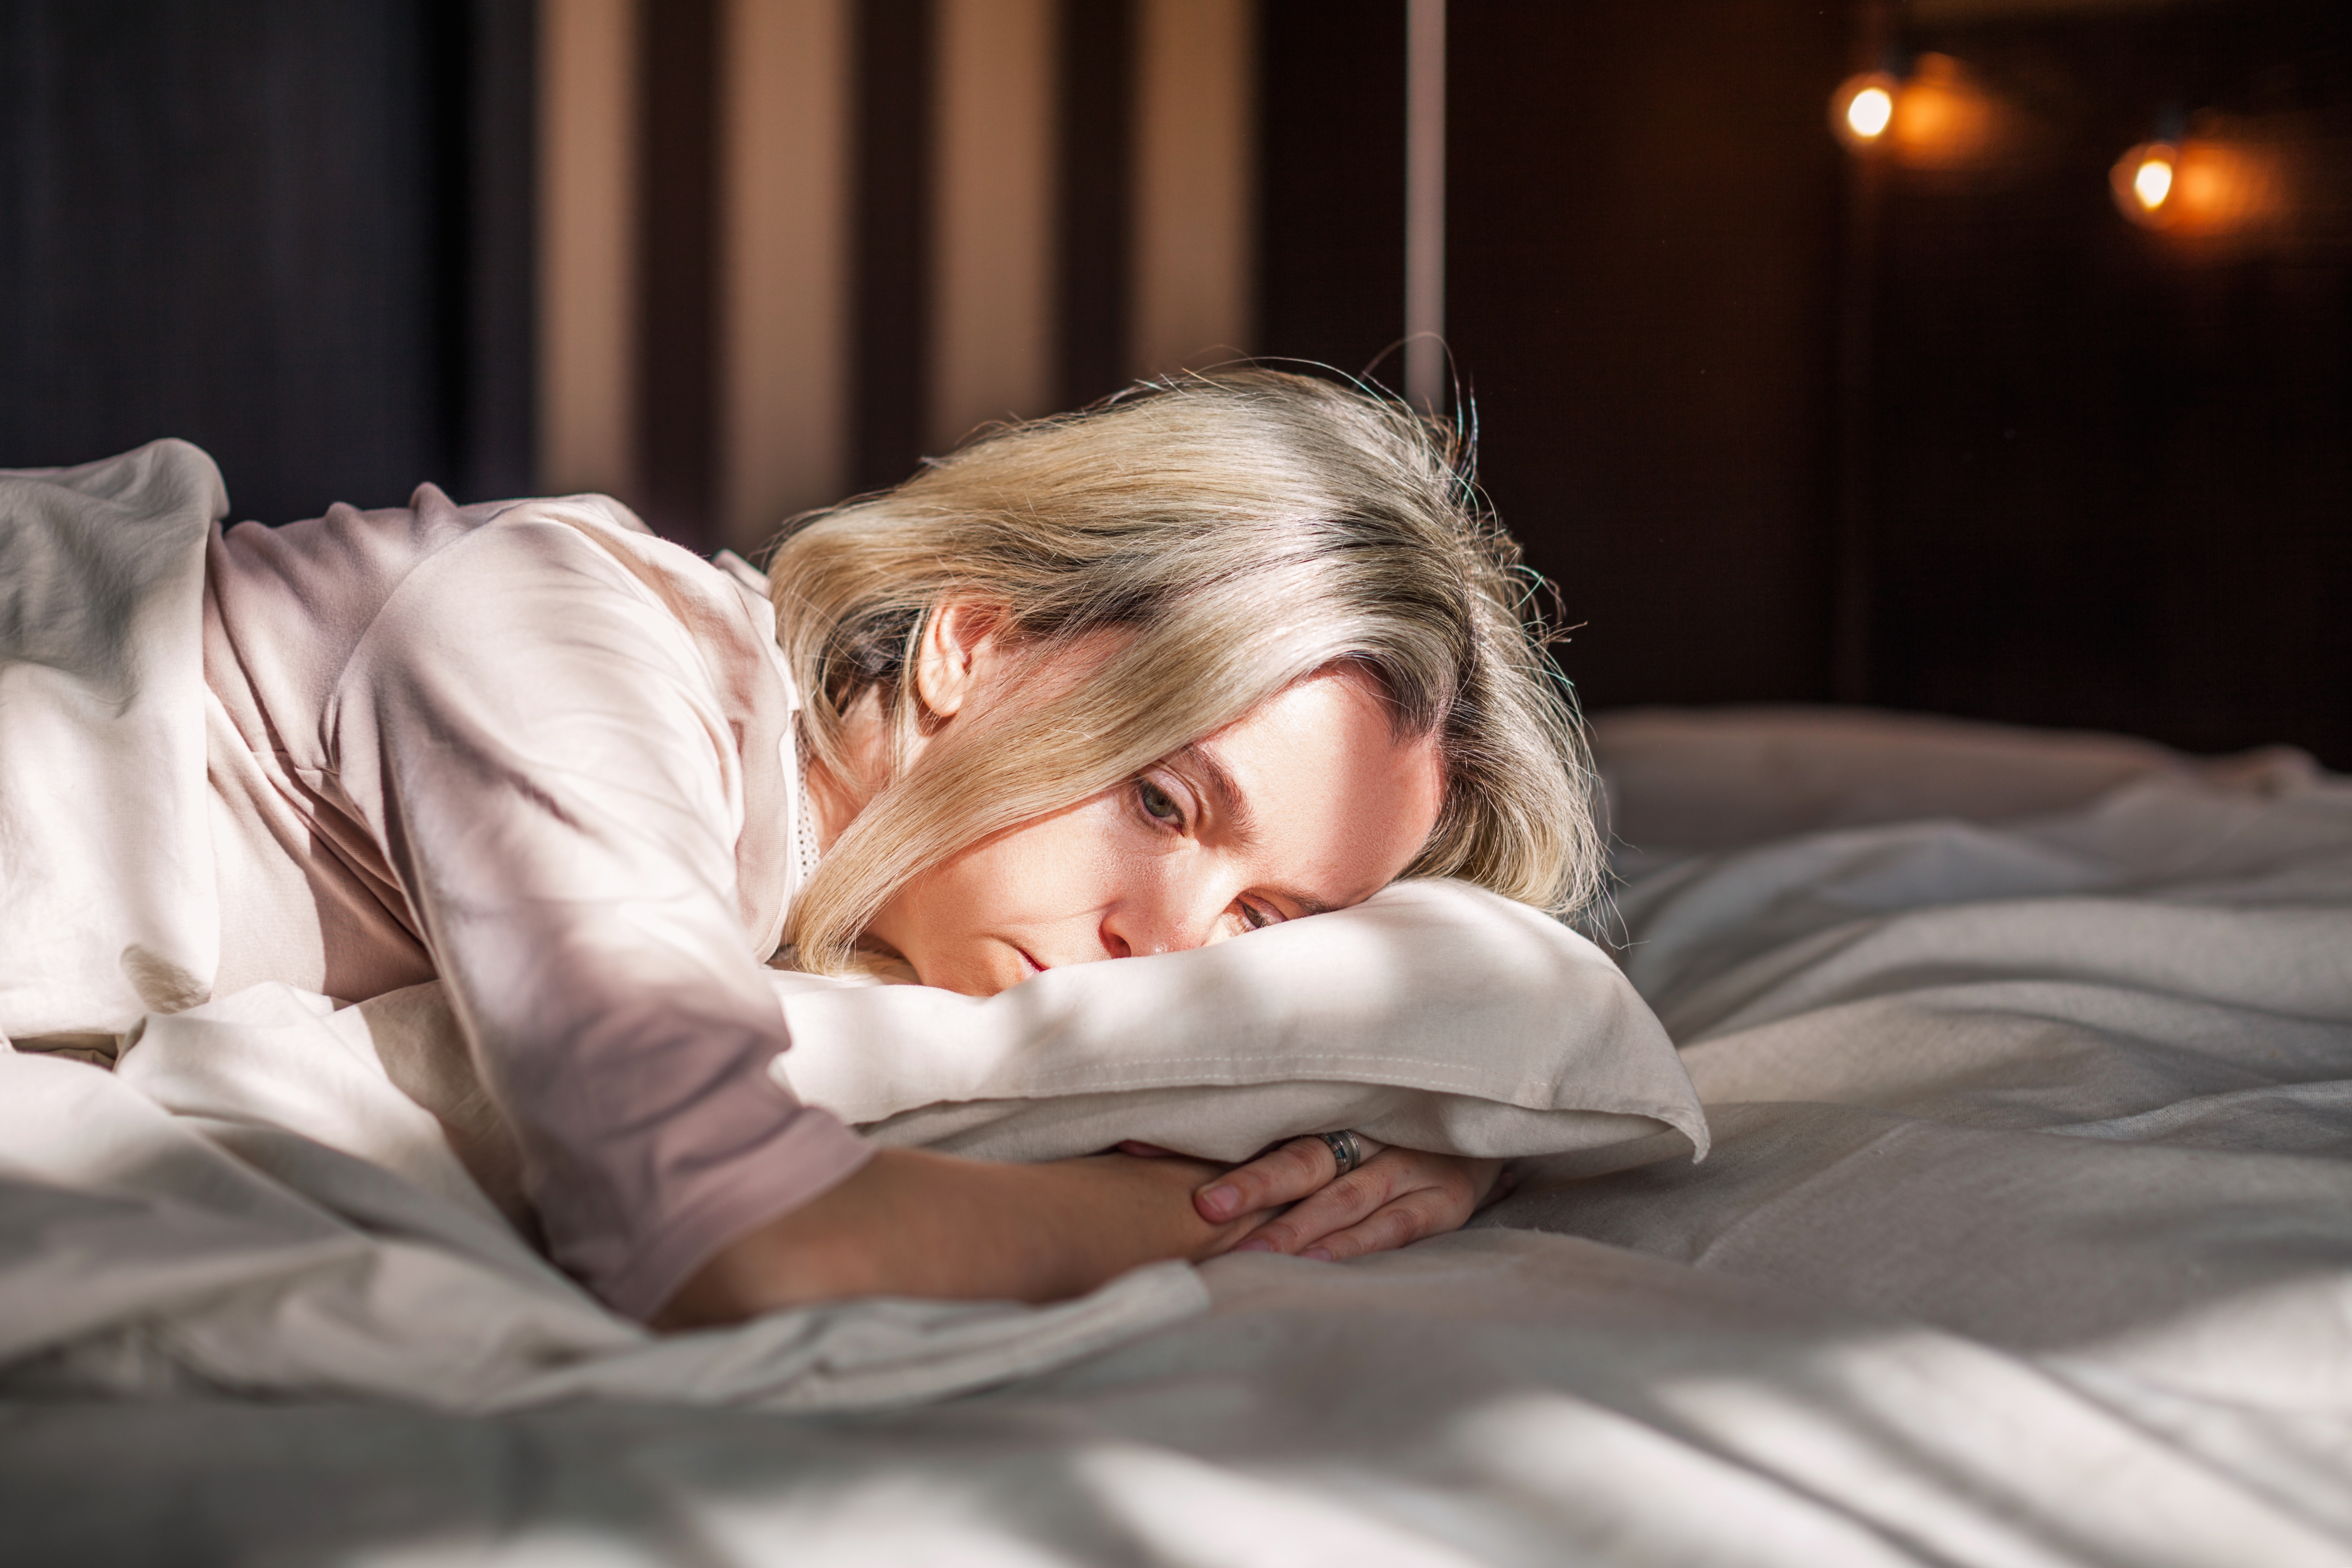 Une femme à l'air triste, allongée et réveillée dans son lit | Source : Shutterstock